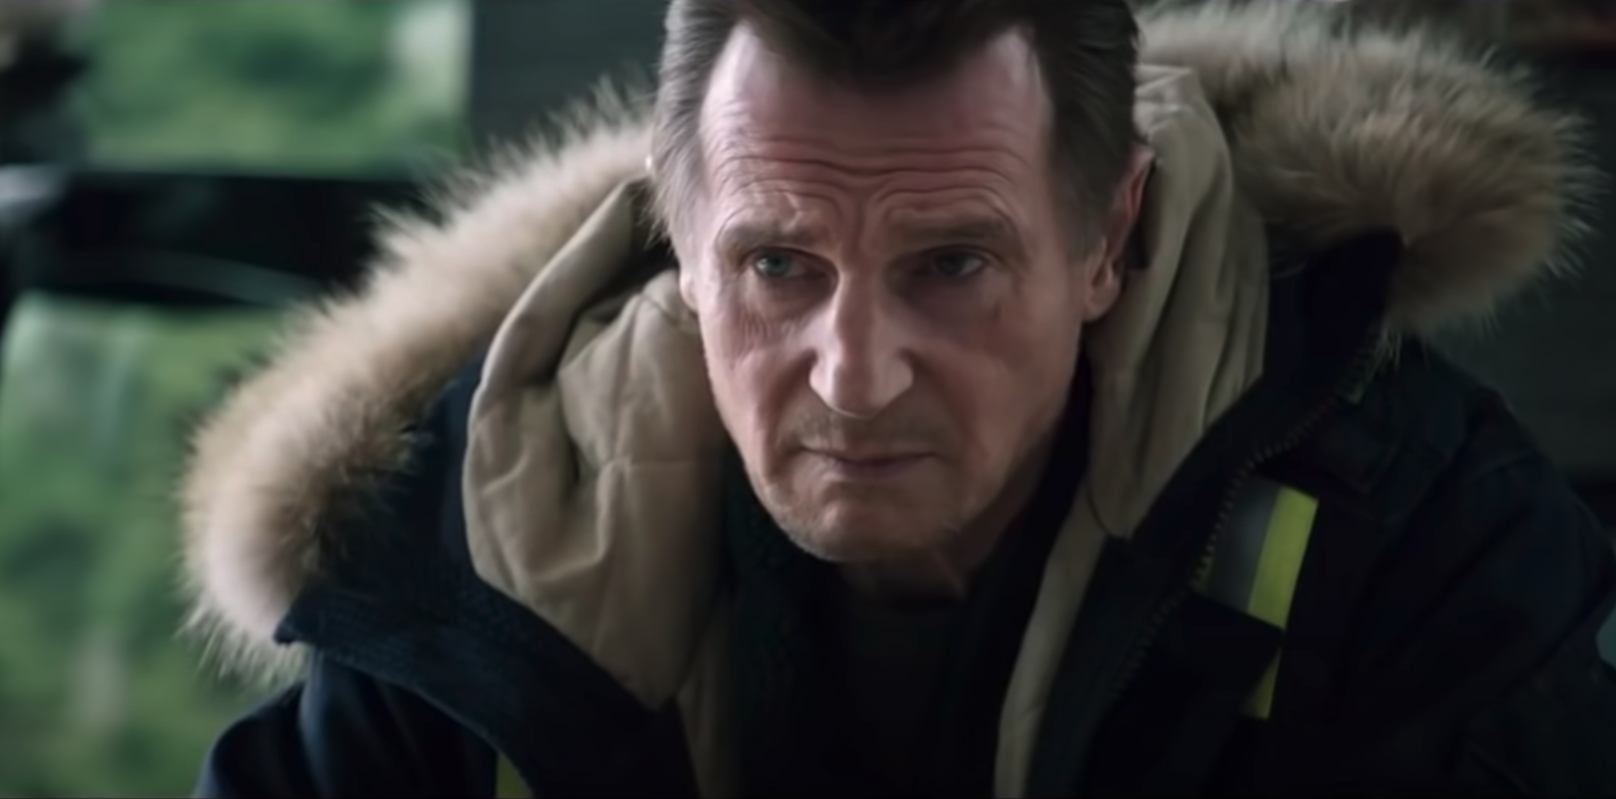 Sang froid : c'est quoi cette comédie policière avec Liam Neeson sur Netflix ?